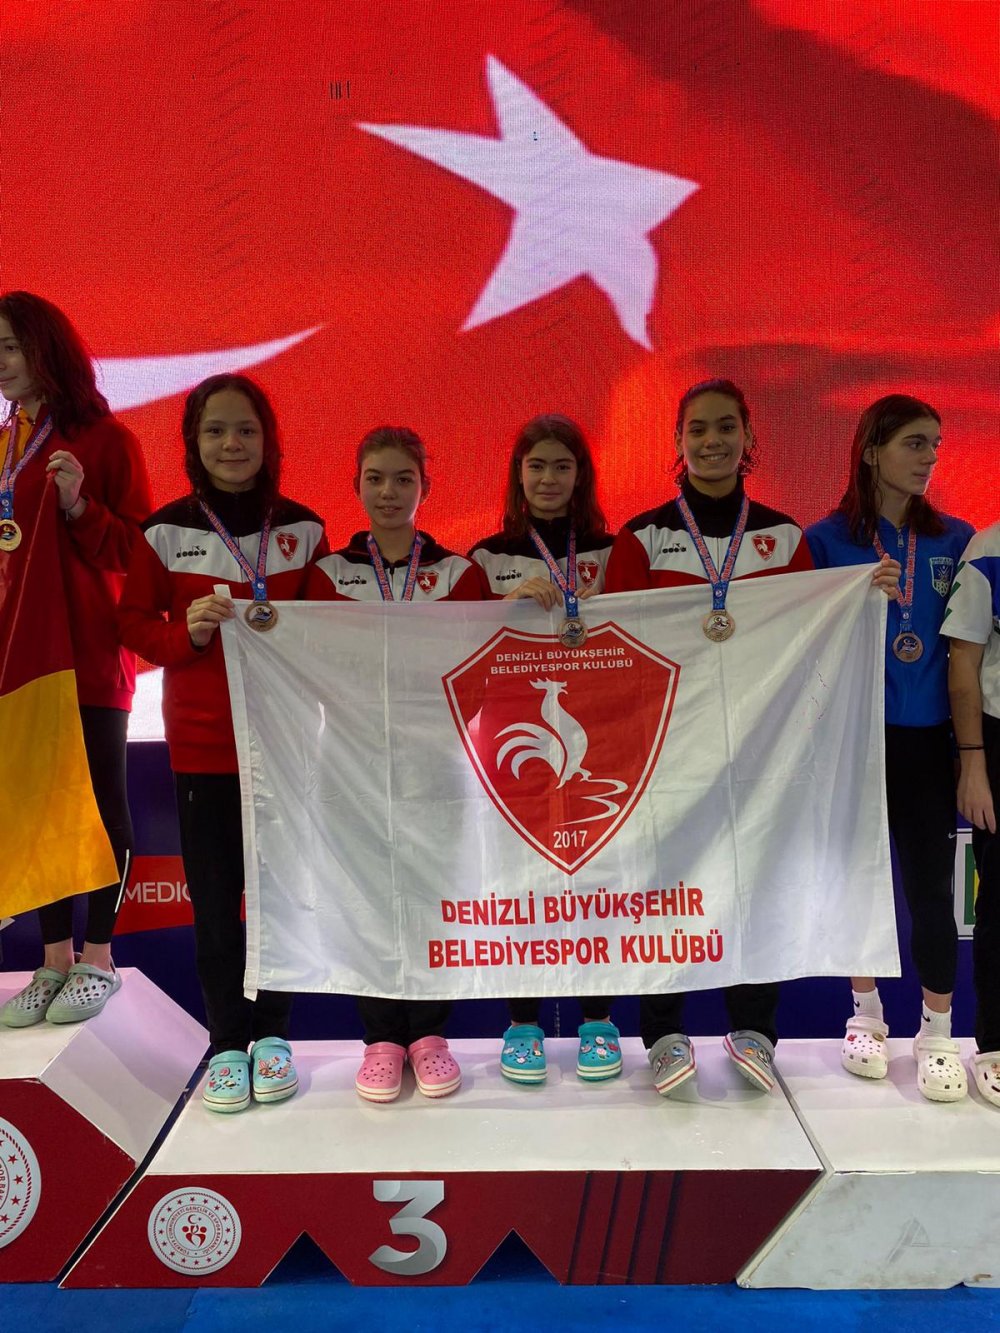 Denizli Büyükşehir Belediyespor Yüzme Takımı sporcusu Deniz Kılınç, Mersin’de düzenlenen 12 Yaş Yüzme Türkiye Şampiyonası’nda 400 metre serbest stilde Türkiye şampiyonu oldu. 7 altın, 6 gümüş ve 21 bronz ile toplamda 34 madalya kazanan bizim çocuklar şampiyonaya bir kez daha damgasını vurdu.